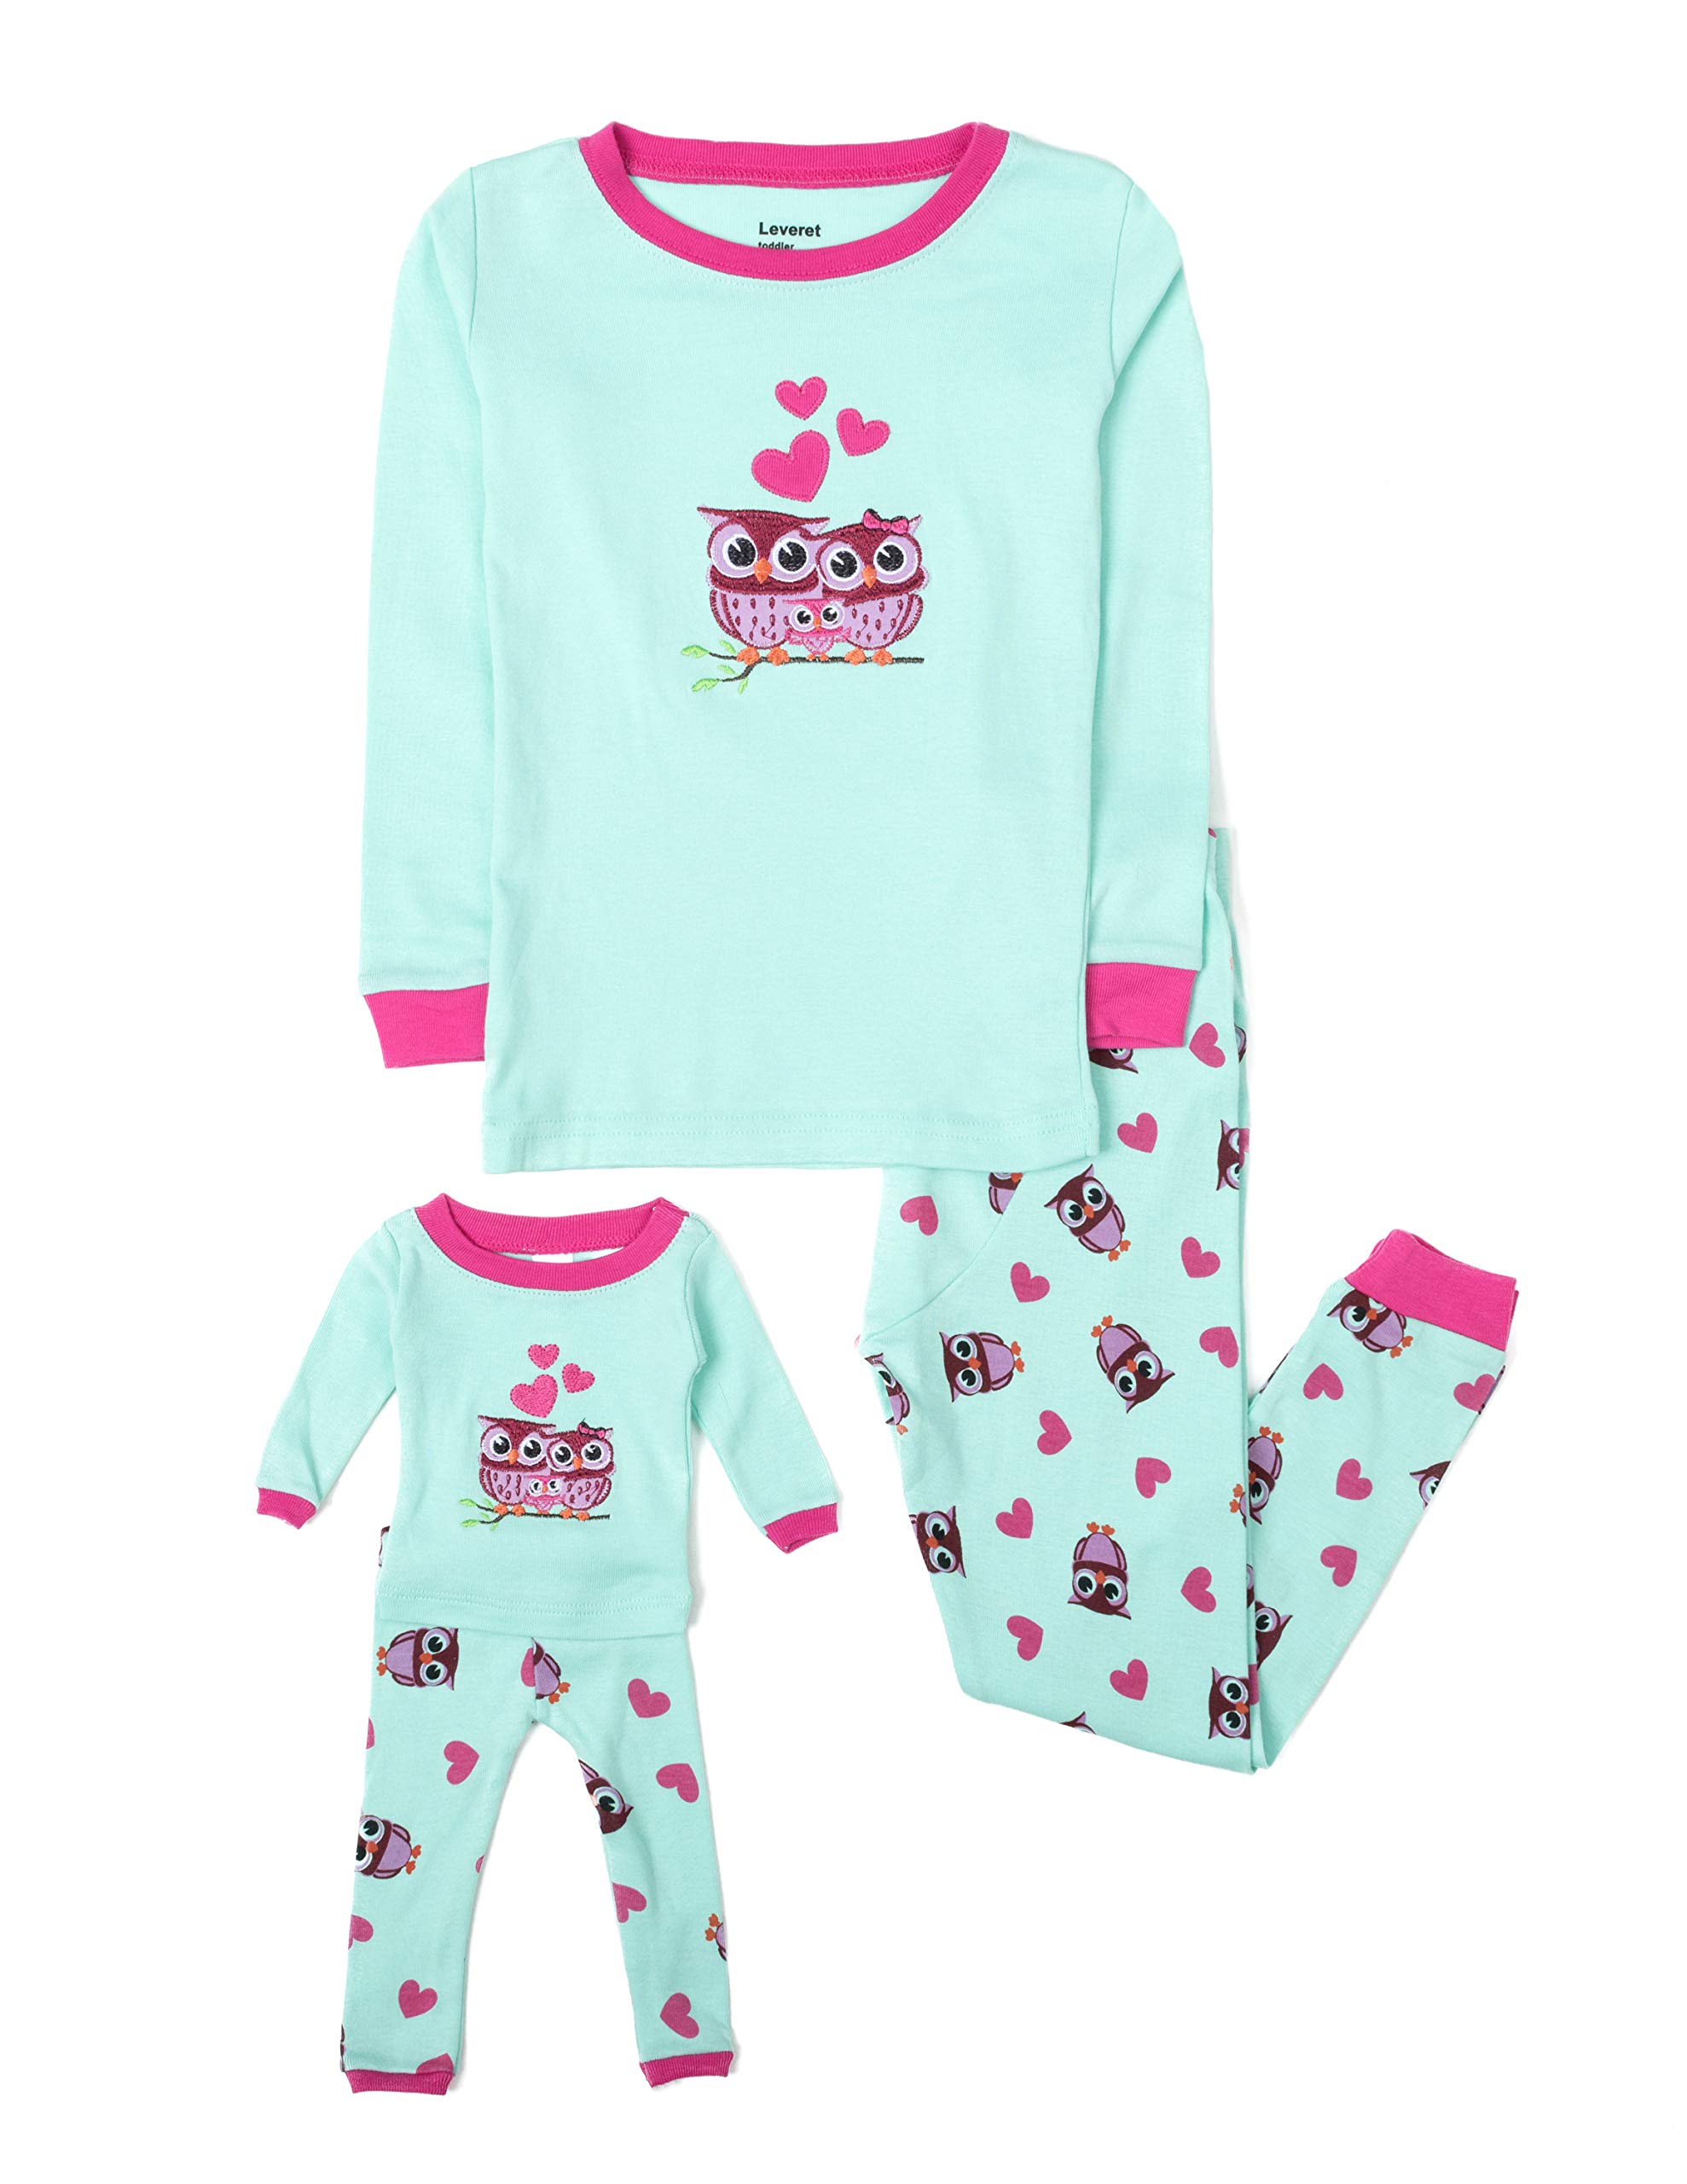 Leveret Kids & Toddler Pajamas Matching Doll & Girls Pajamas 100% Cotton Set (Toddler-14 Years) Fits American Girl